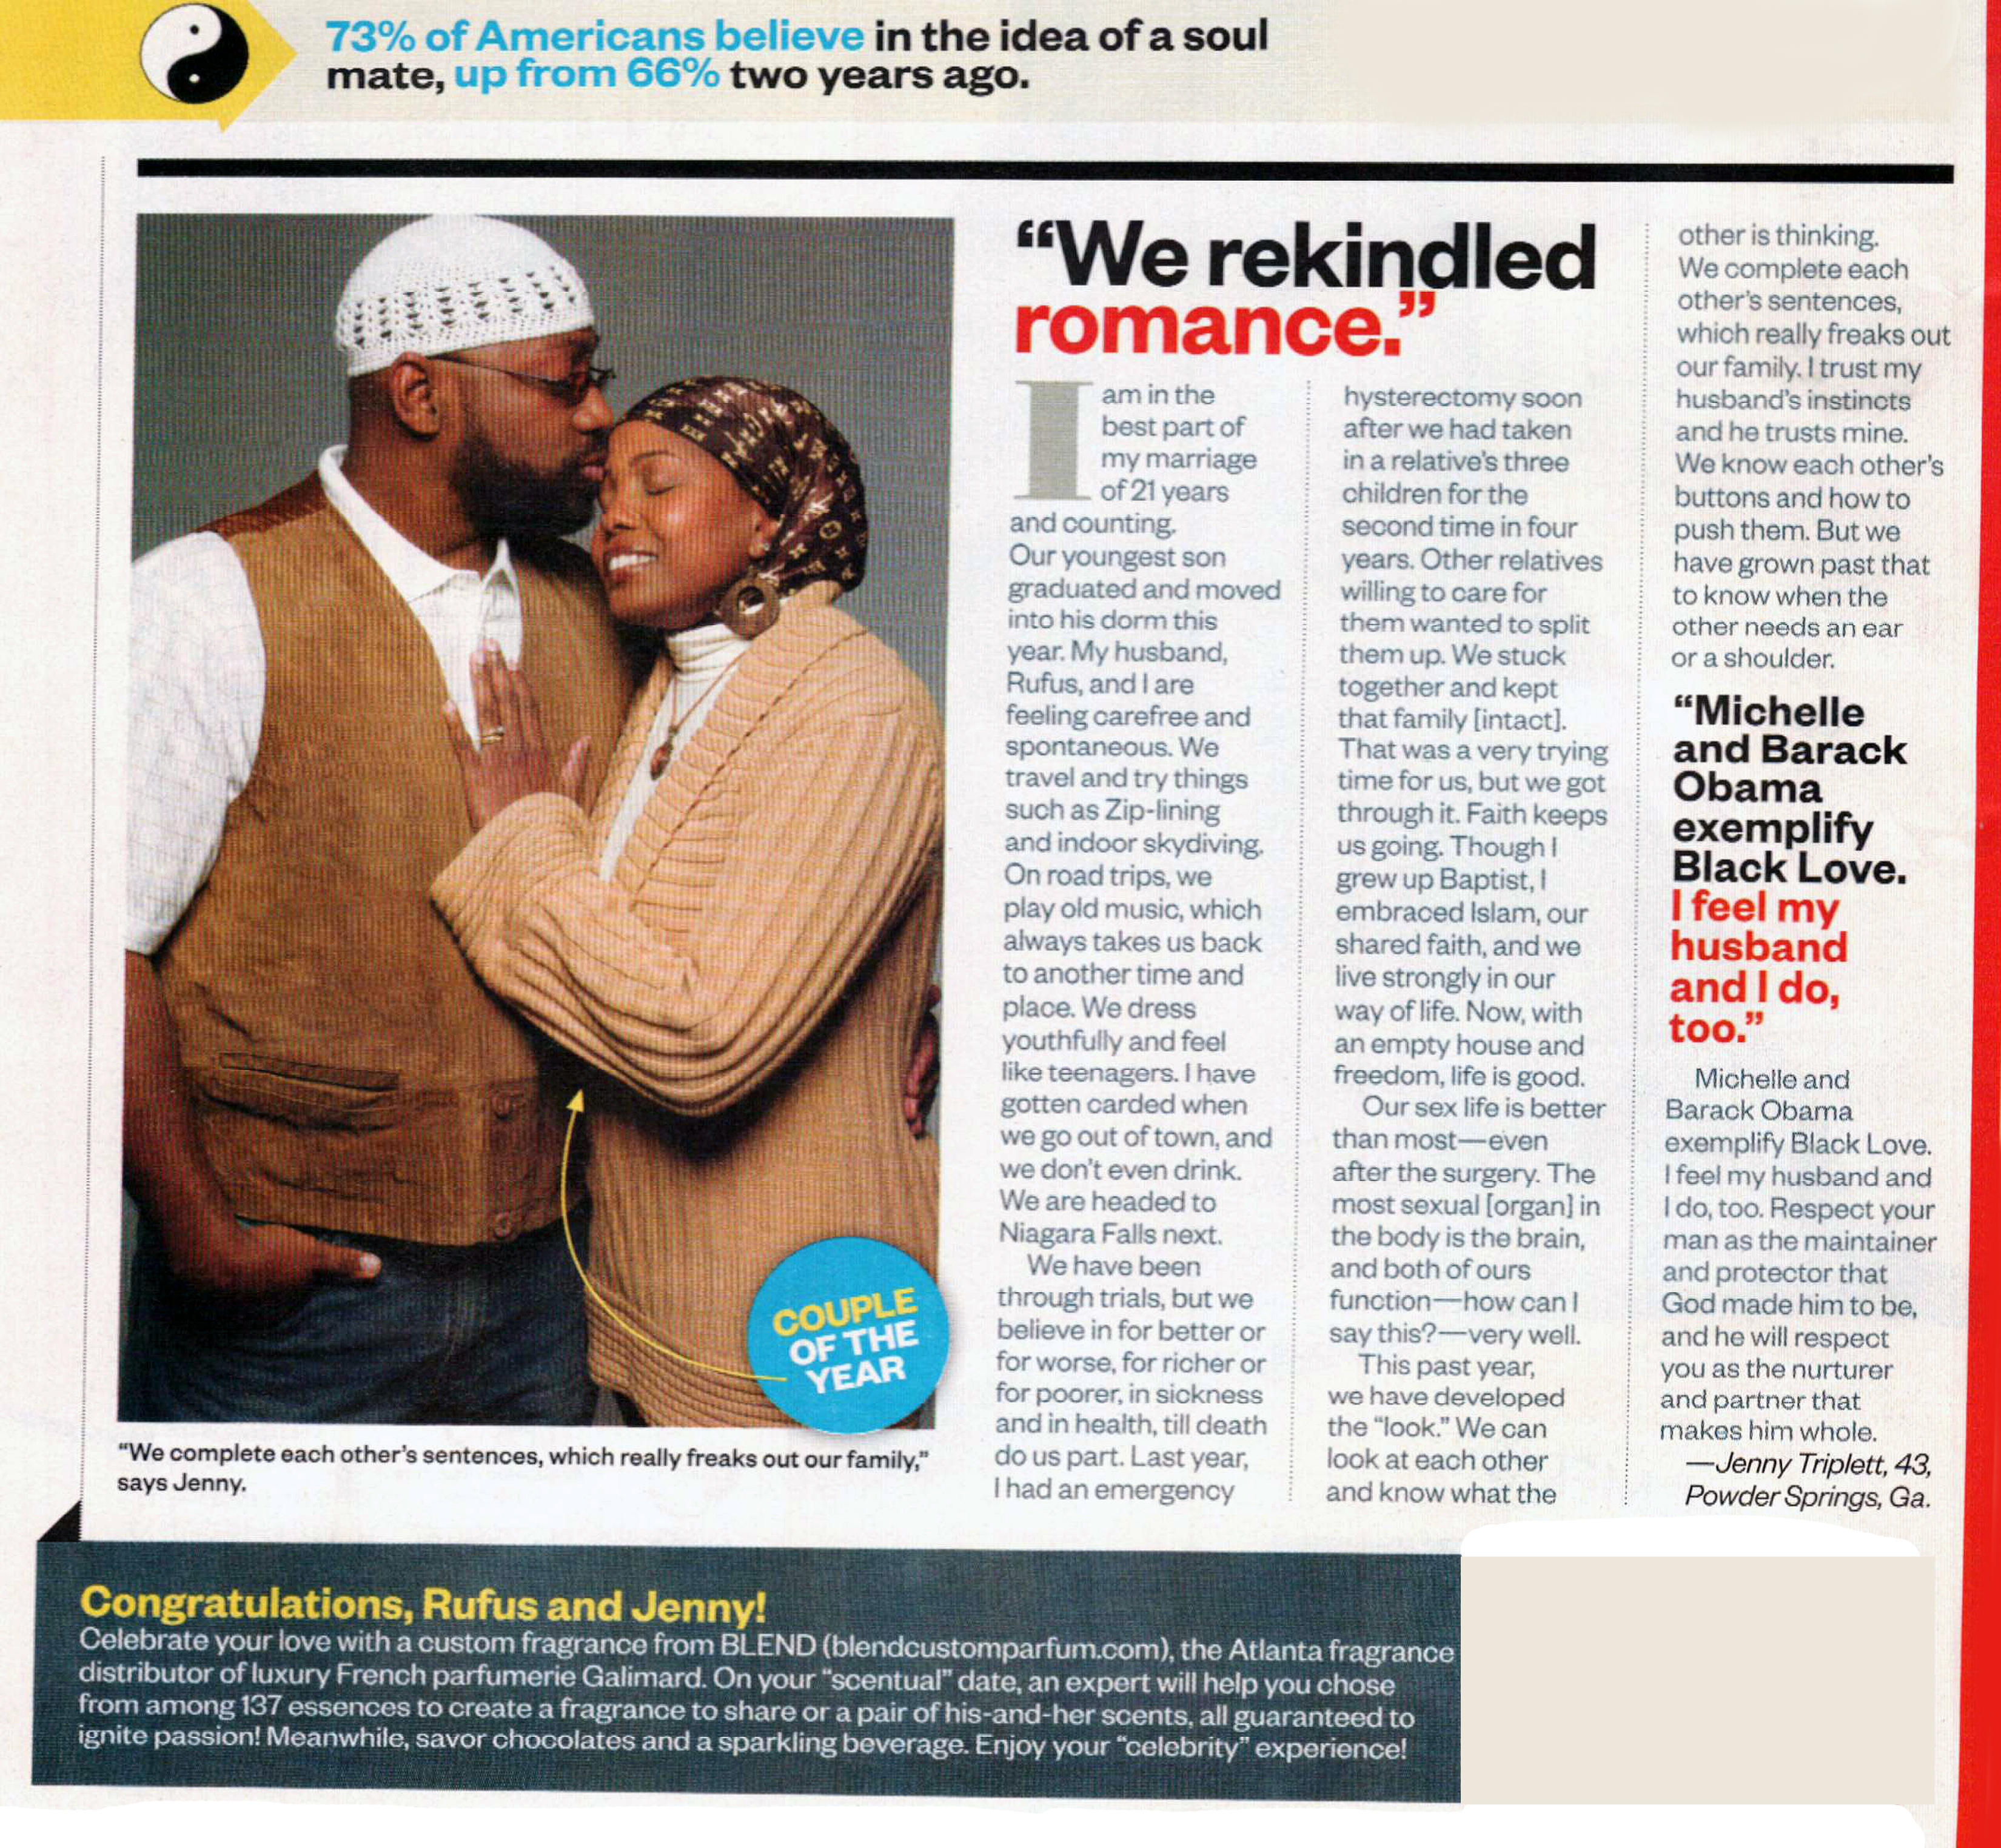 Rufus & Jenny Triplett in Ebony Magazine